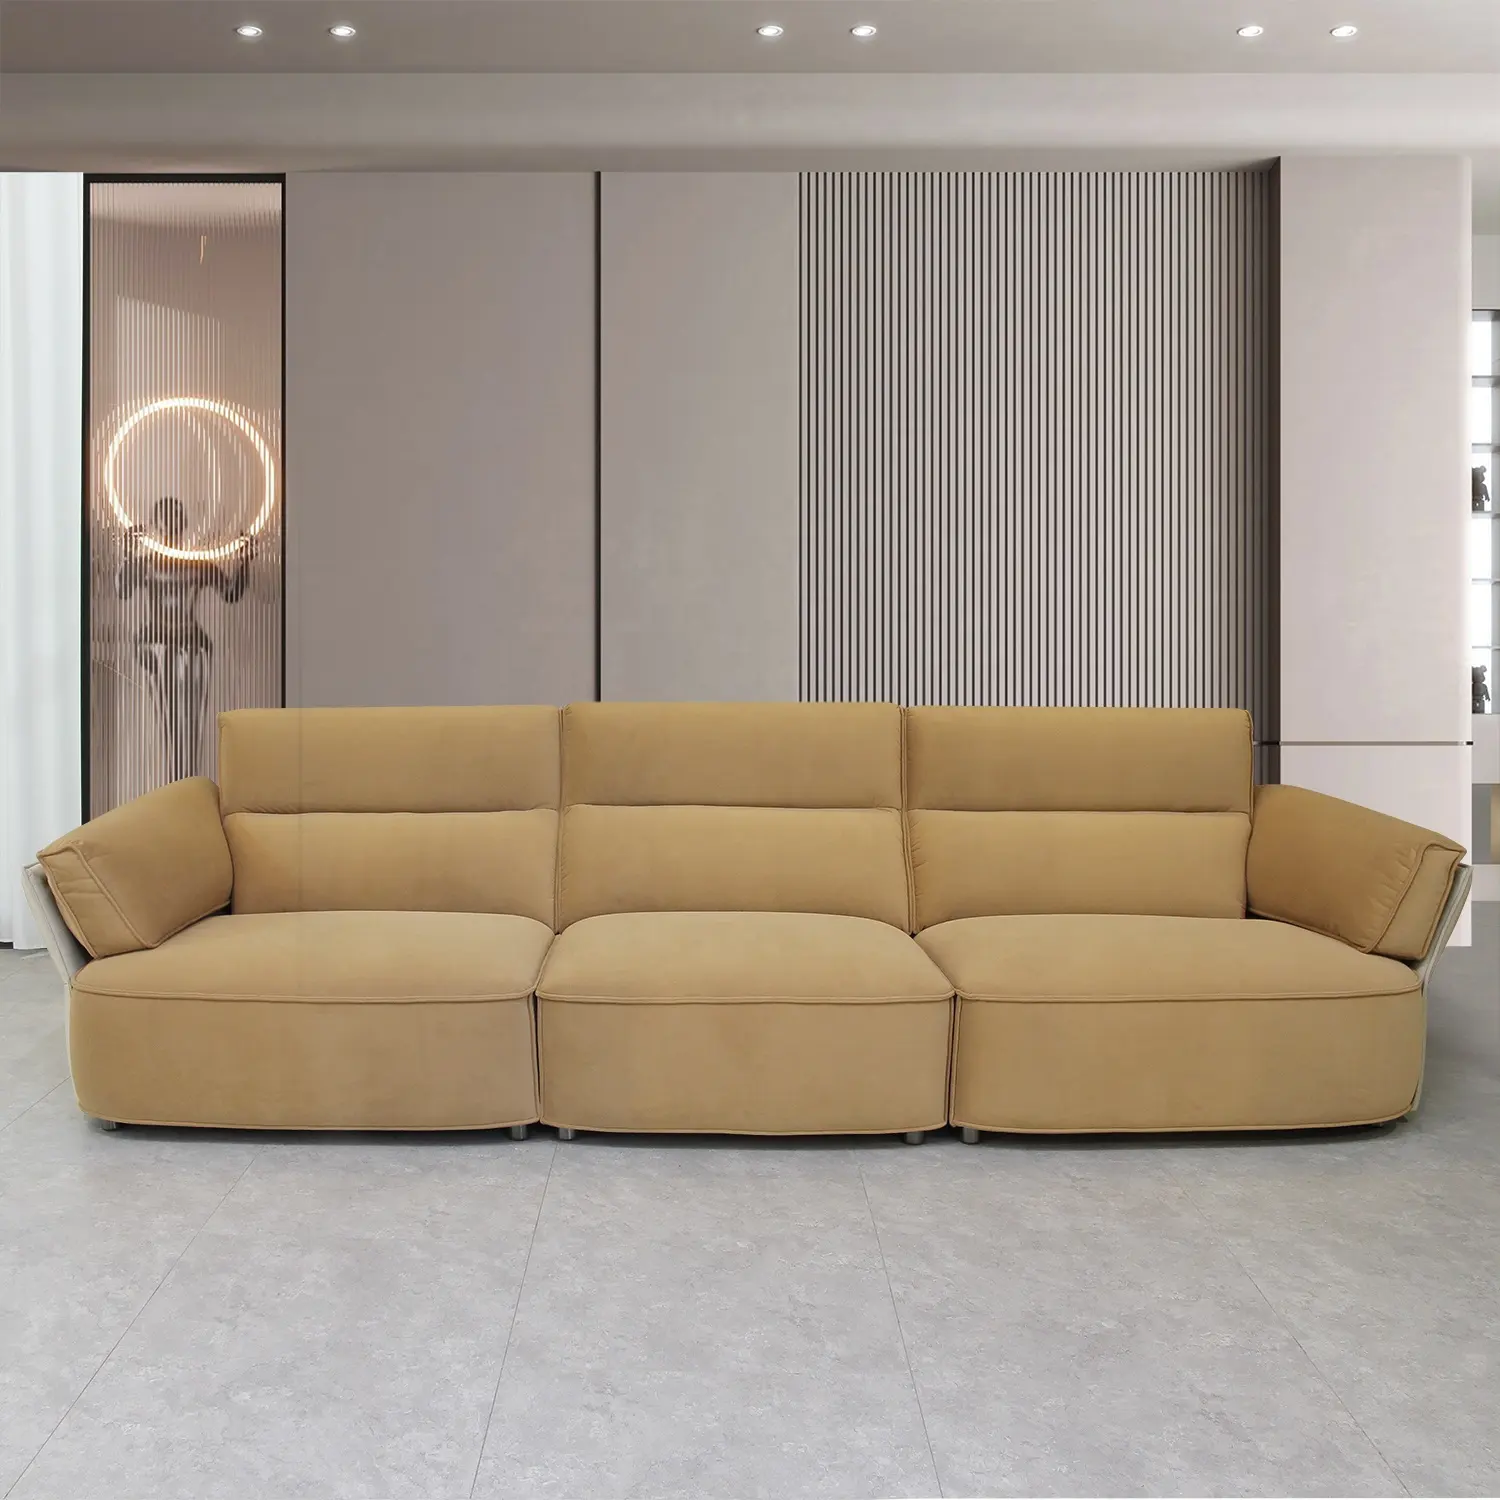 Set soggiorno componibile moderno sofà in tessuto ad alta densità con struttura in legno massello divano mobili per la casa